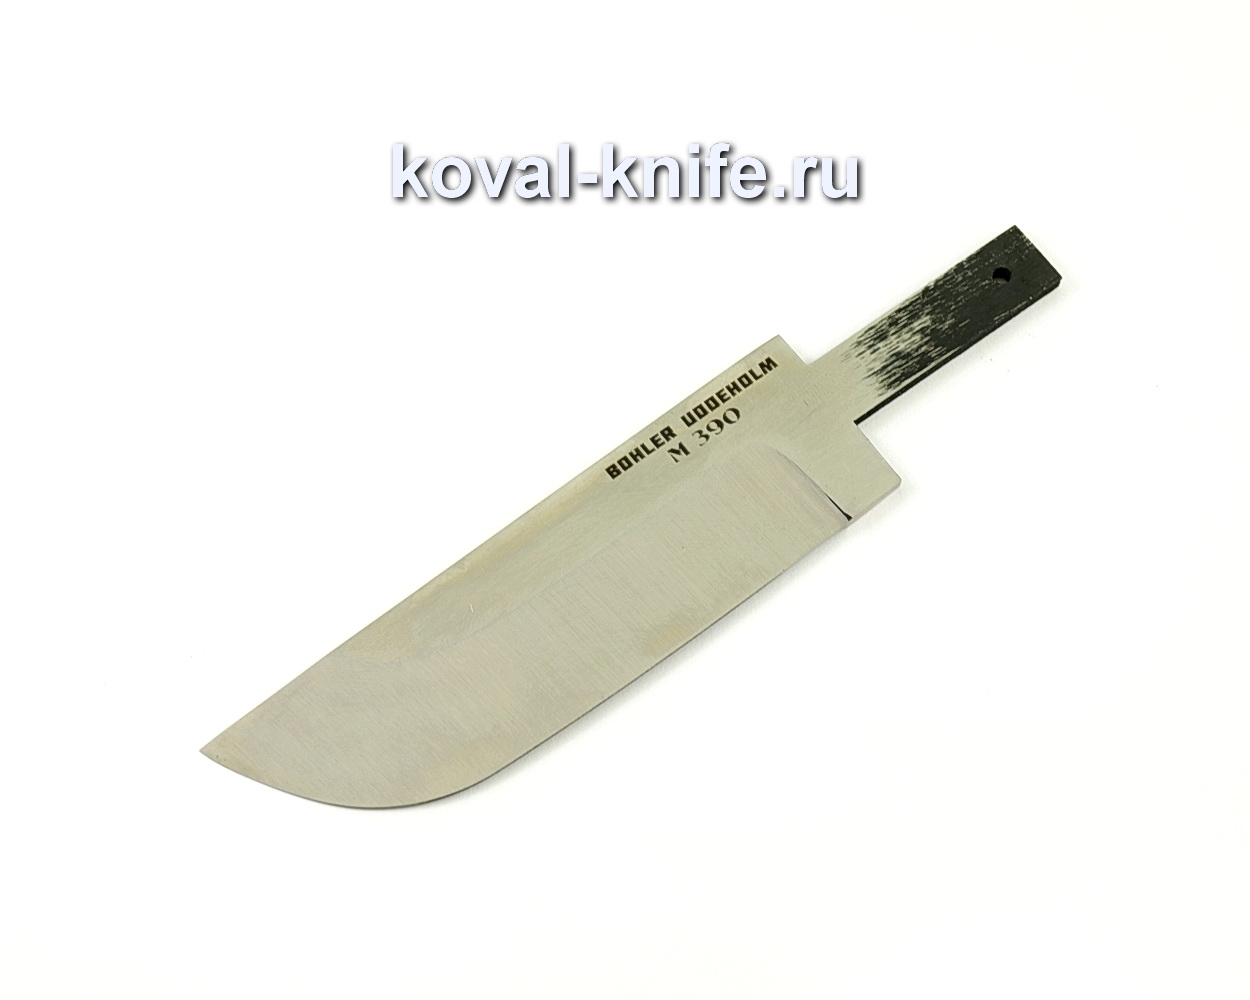 Клинок для ножа из порошковой стали M390 Пегас